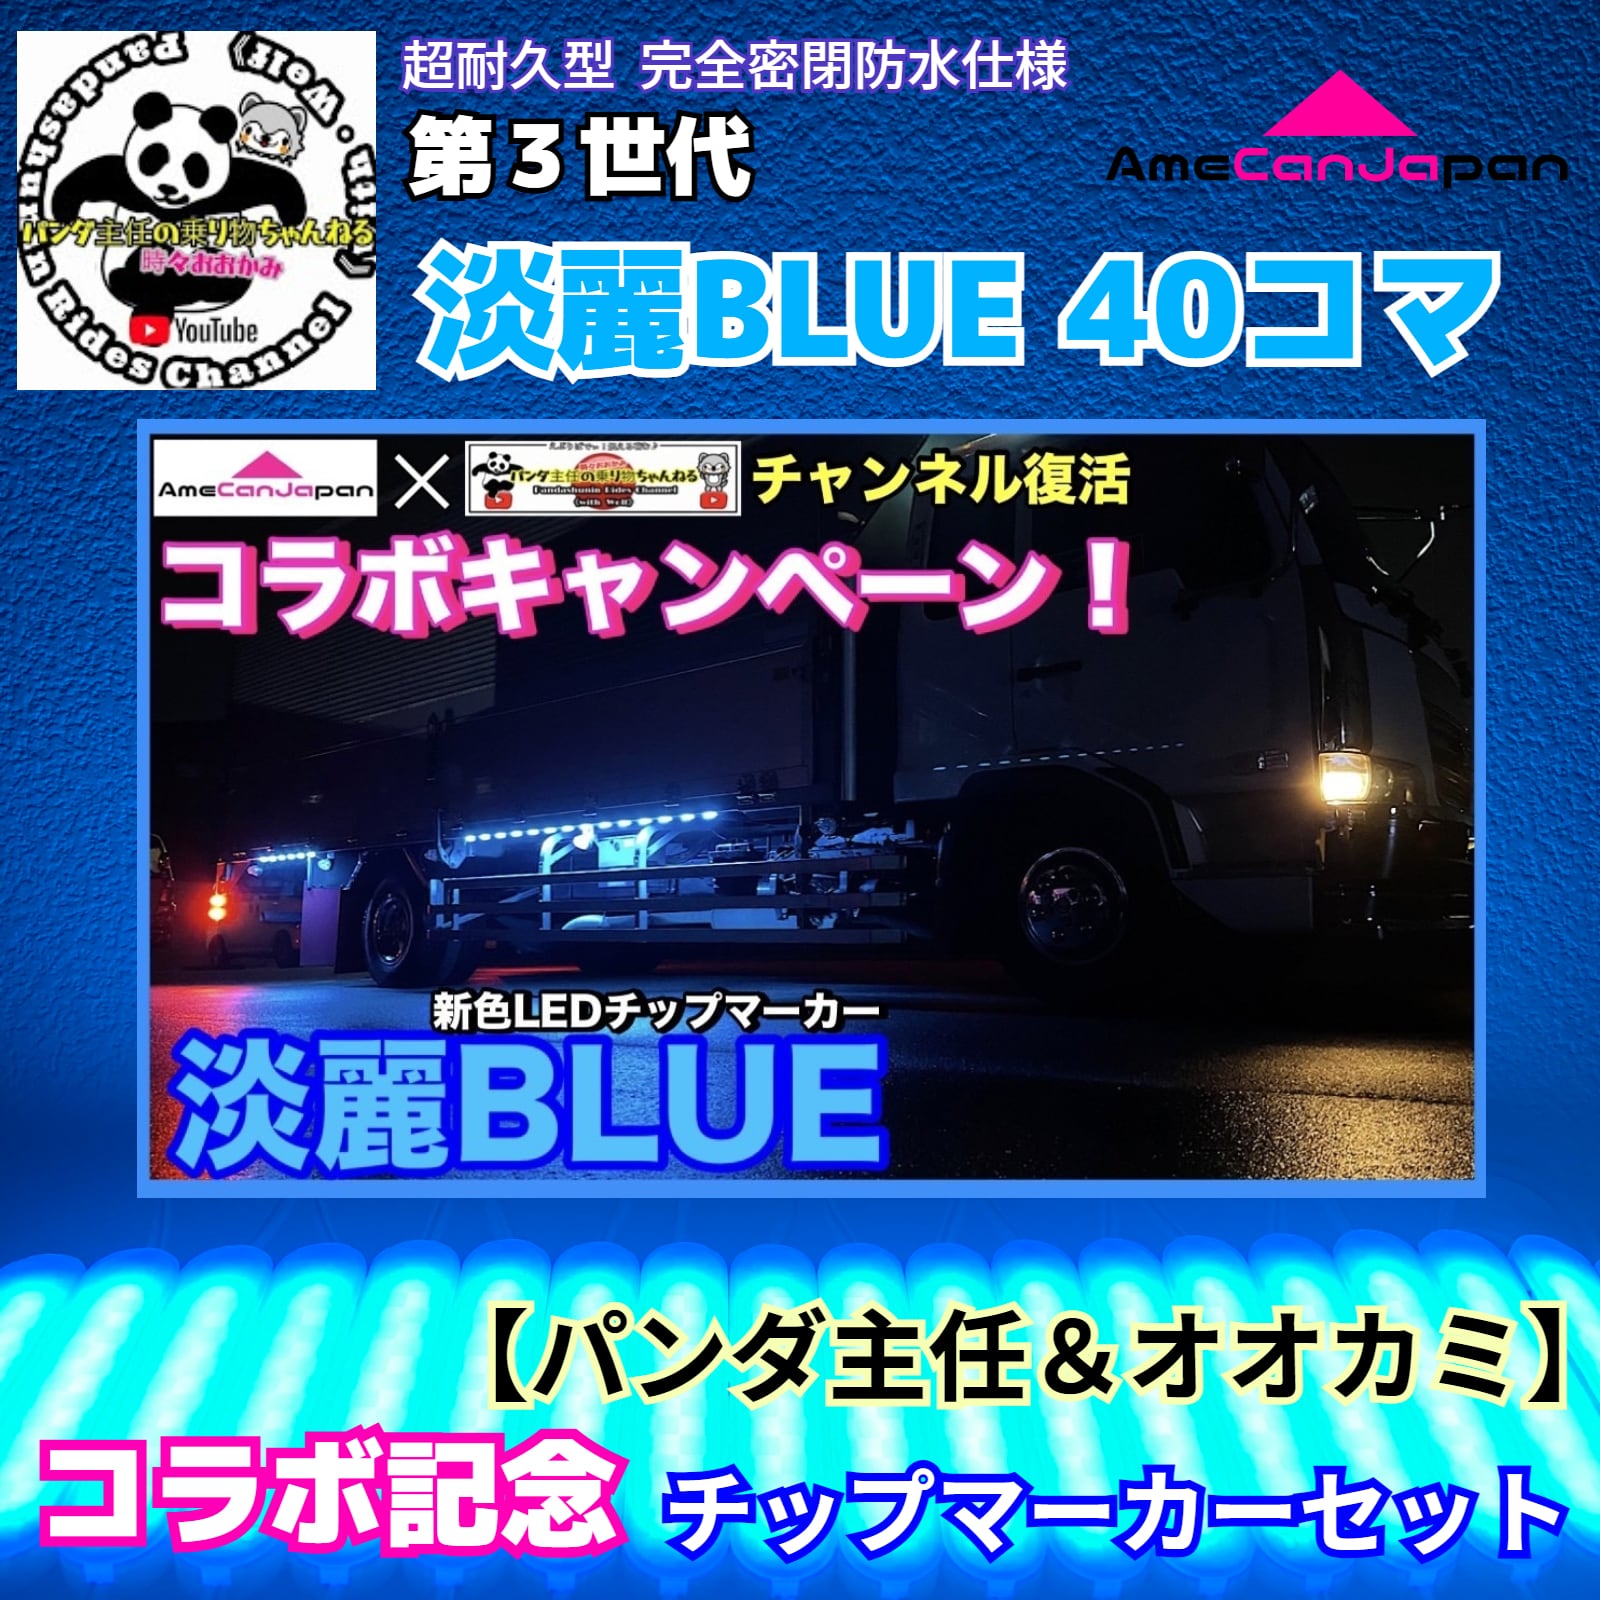 淡麗ブルー 40コマ 24V LEDサイドマーカー シャーシマーカー 第3世代